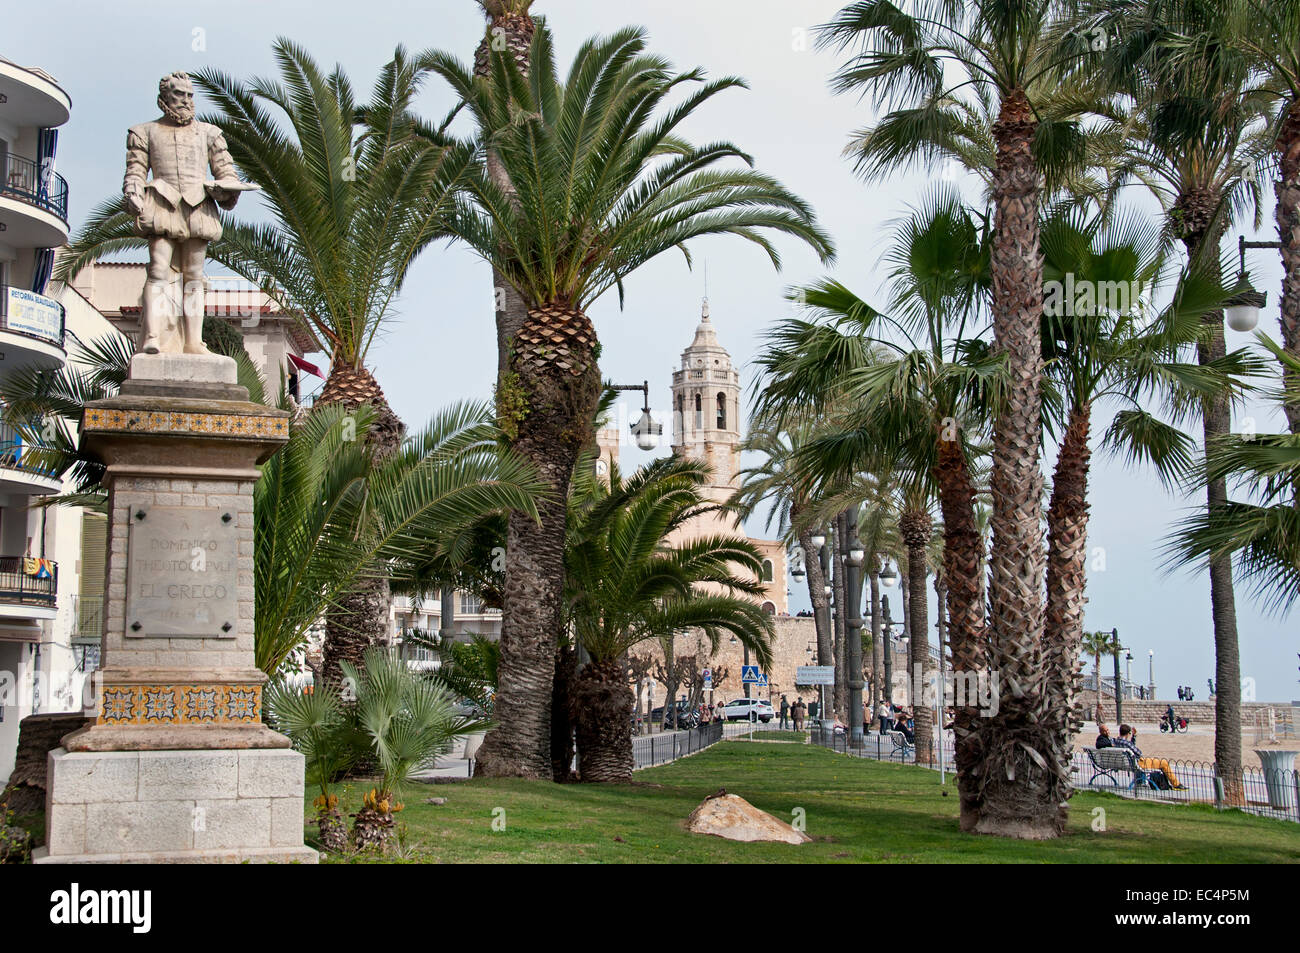 Spiaggia di Sitges Palm tree garden Spagna città spagnola Foto Stock